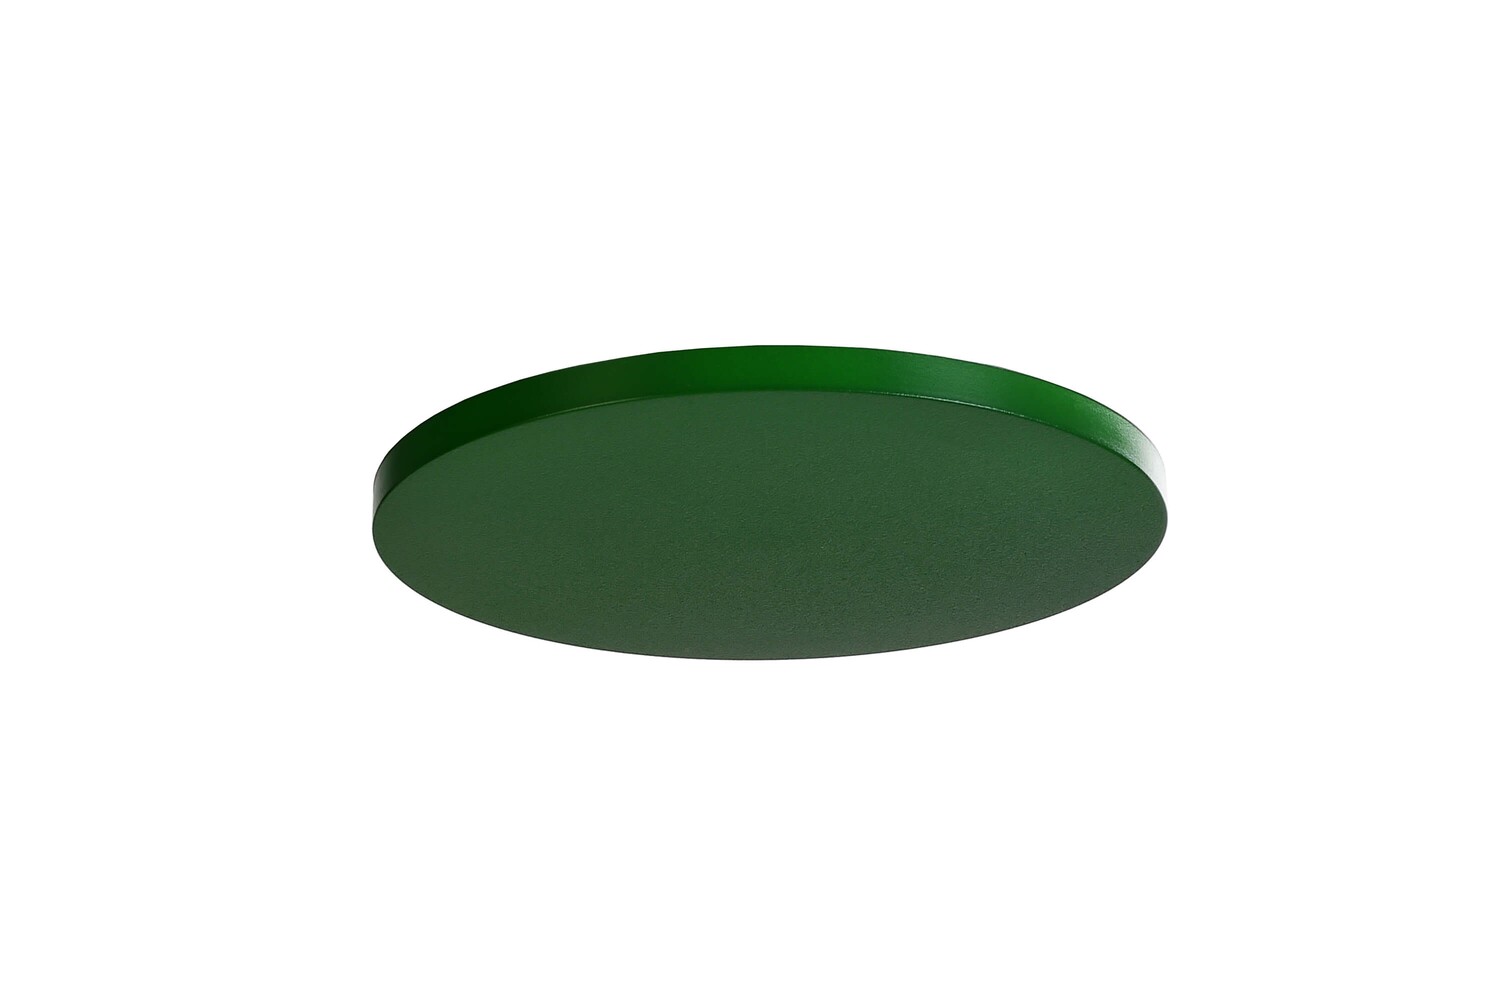 Höhenverstellbarer Deckenstrahler von der Marke Deko-Light in sattgrünem Blatt-Design